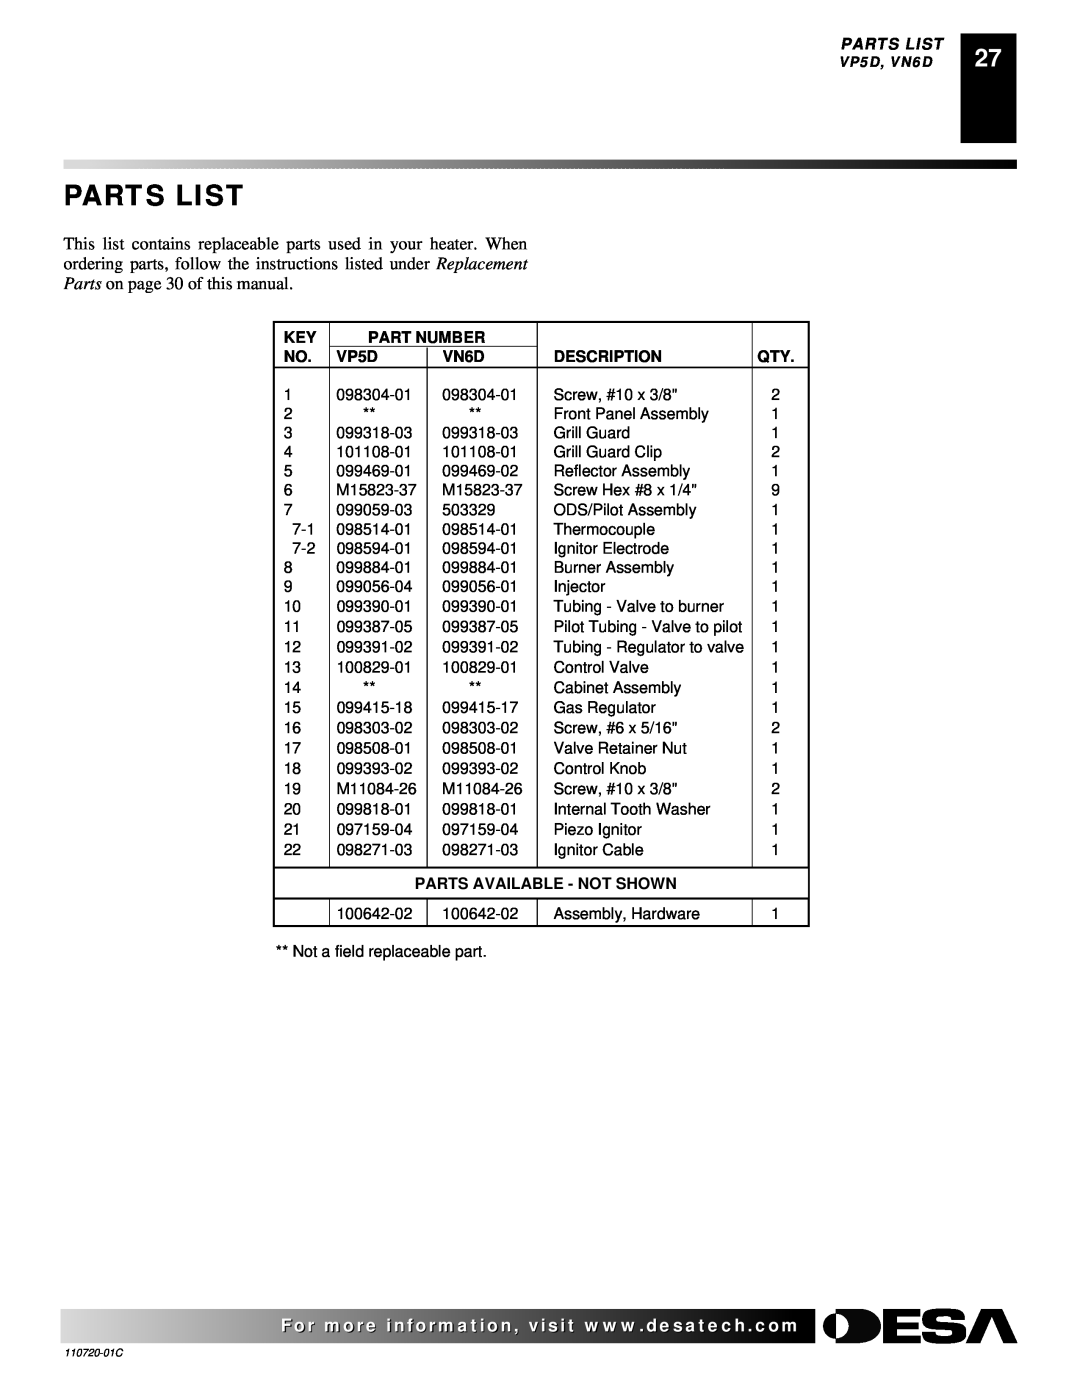 Desa VN10A installation manual Parts List, Part Number, VP5D, VN6D, Description, Parts Available - Not Shown 